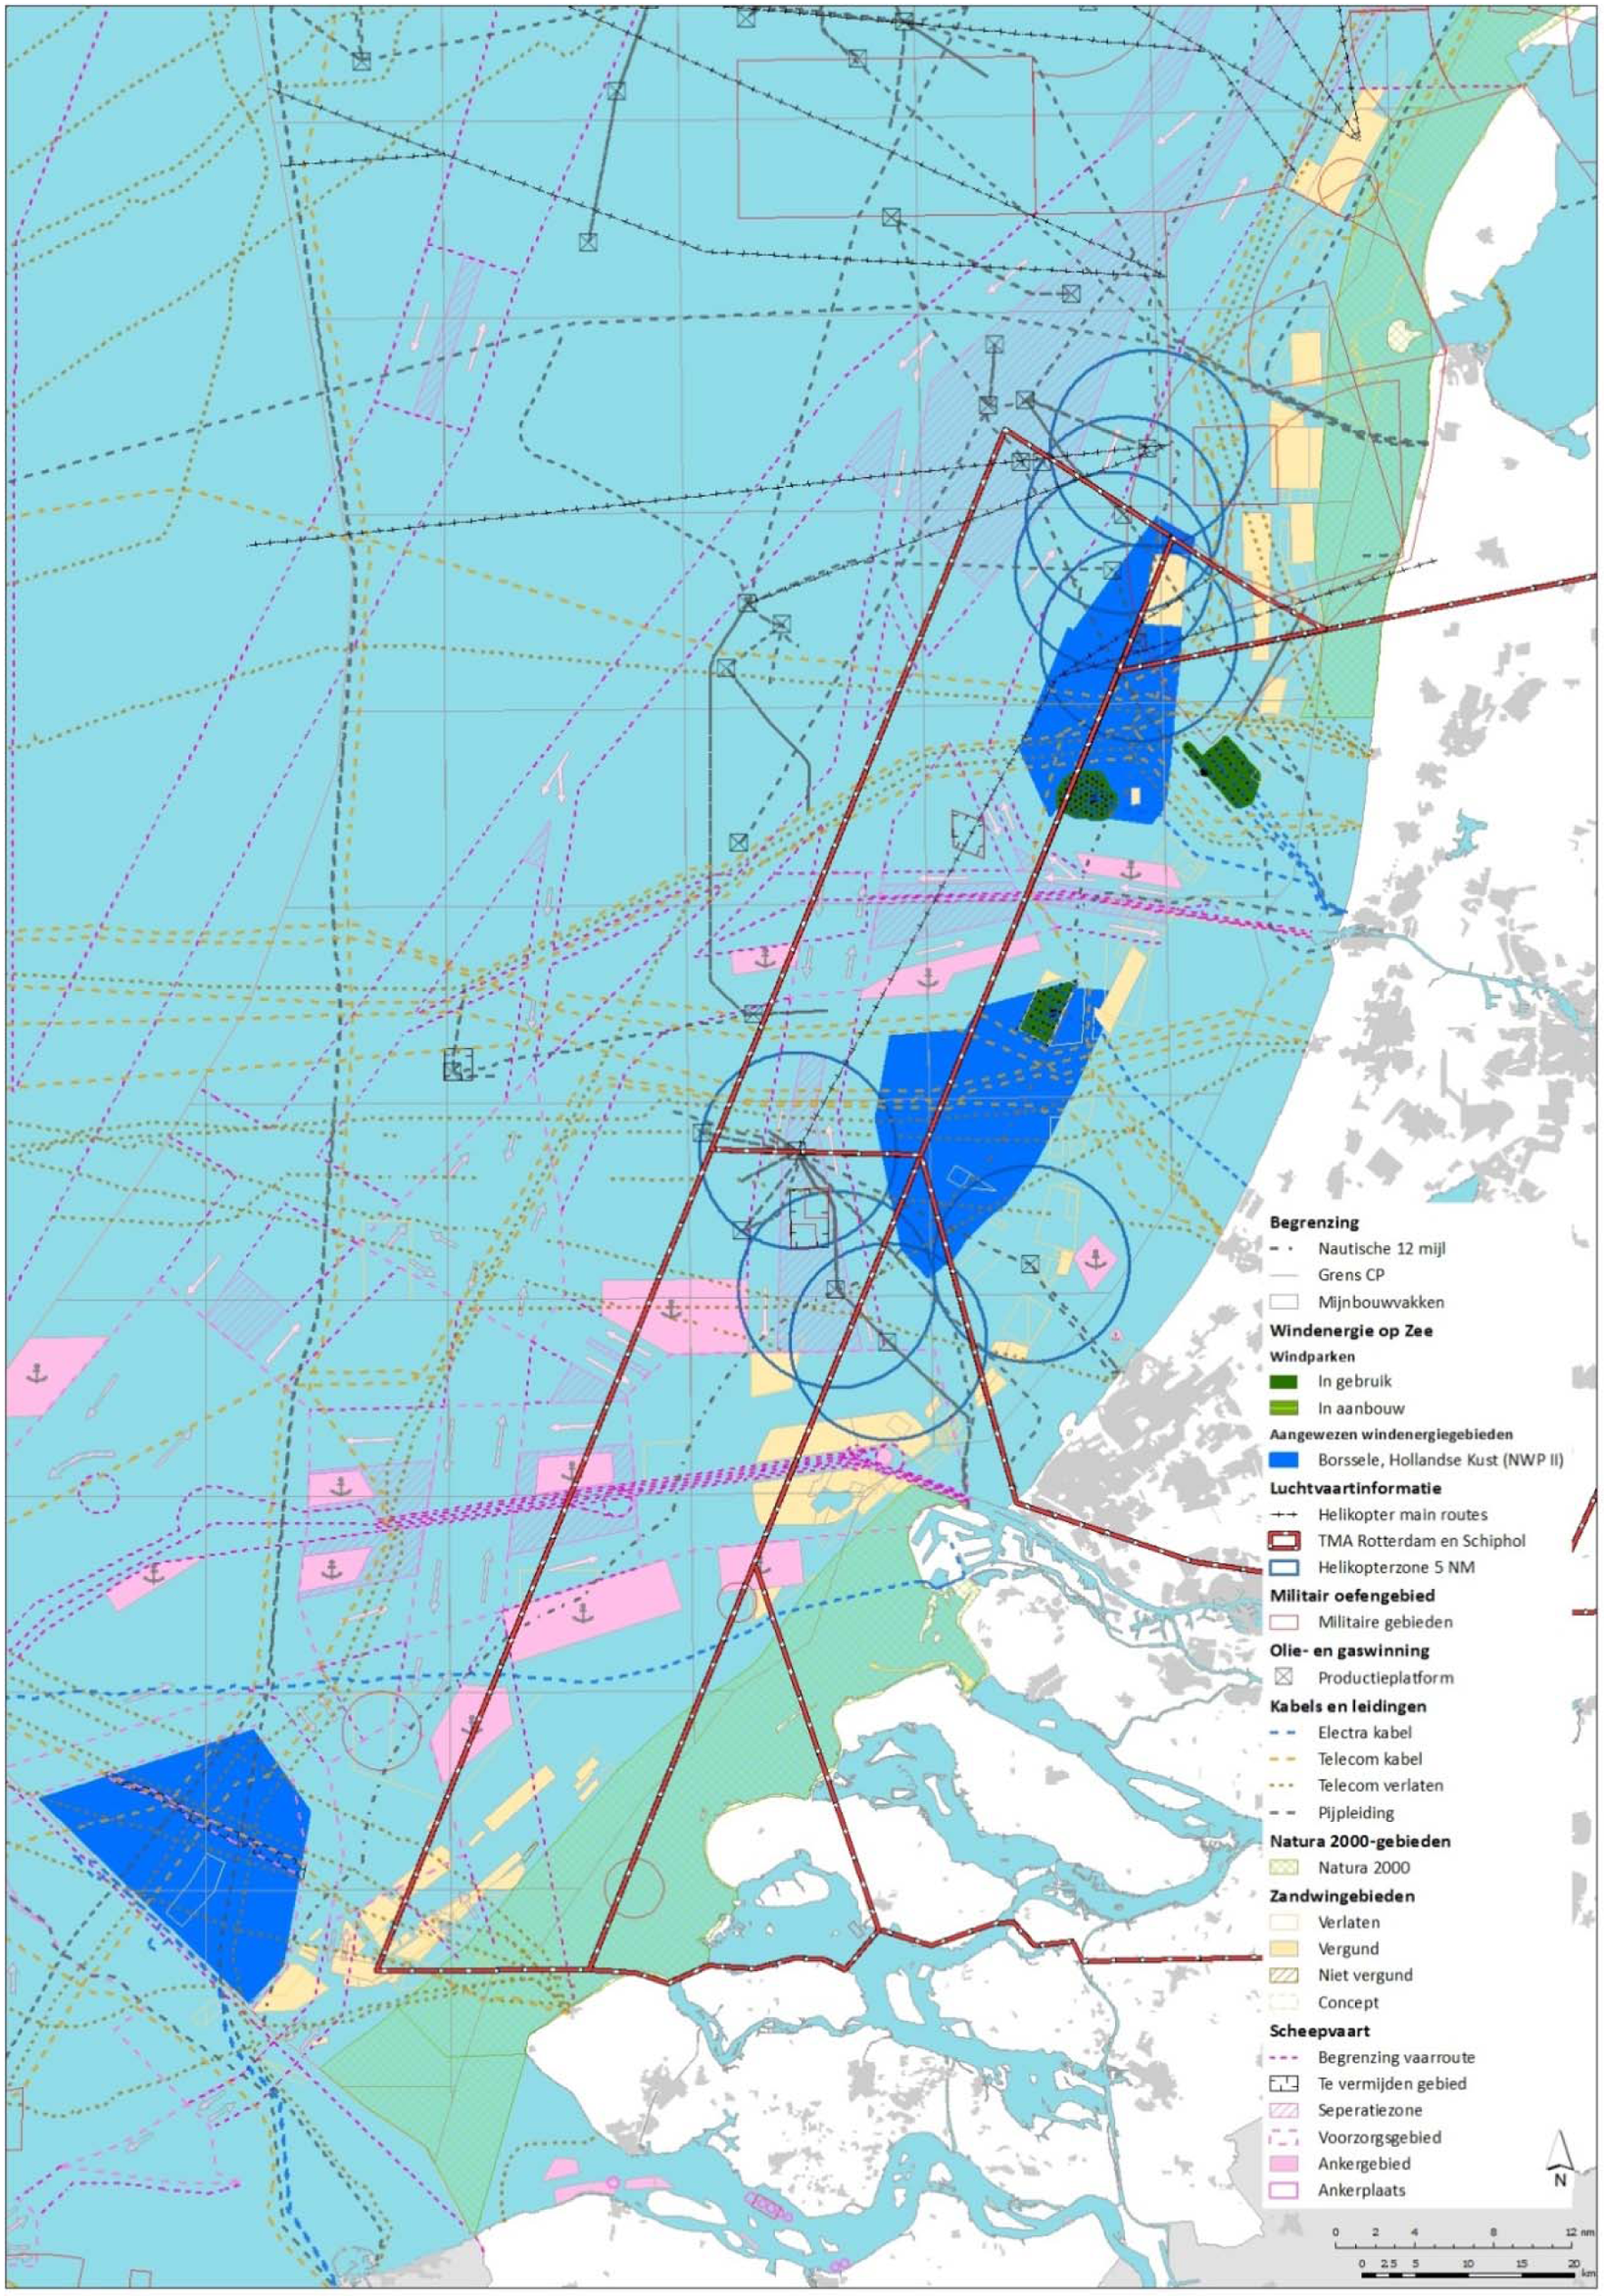 Figuur 2 Windenergiegebied Hollandse Kust met gebruiksfuncties in de directe omgeving